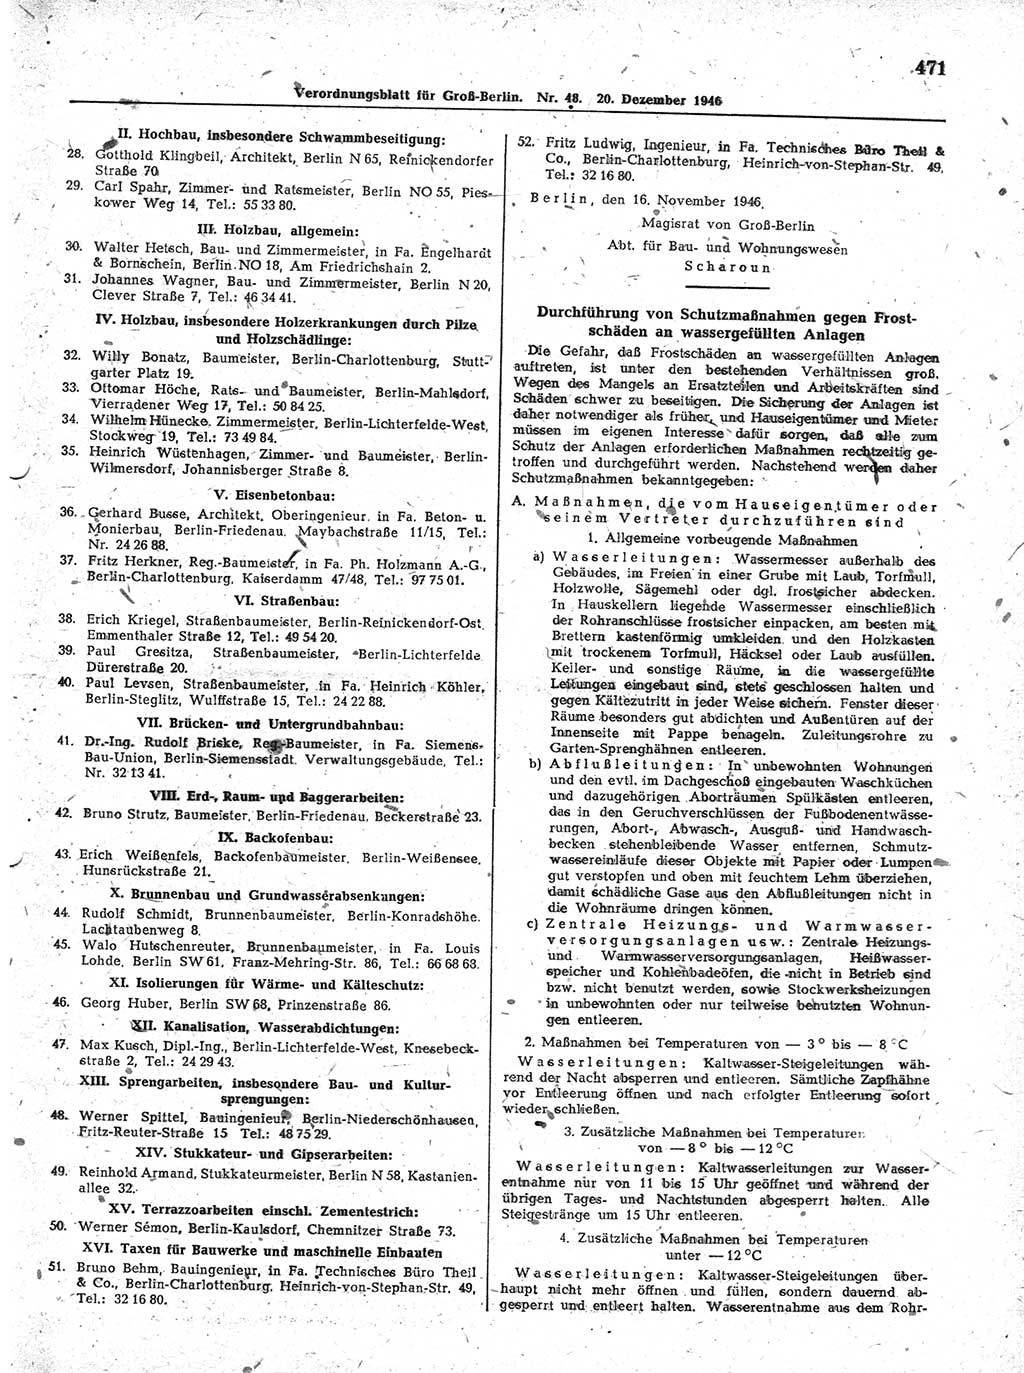 Verordnungsblatt (VOBl.) der Stadt Berlin, für Groß-Berlin 1946, Seite 471 (VOBl. Bln. 1946, S. 471)